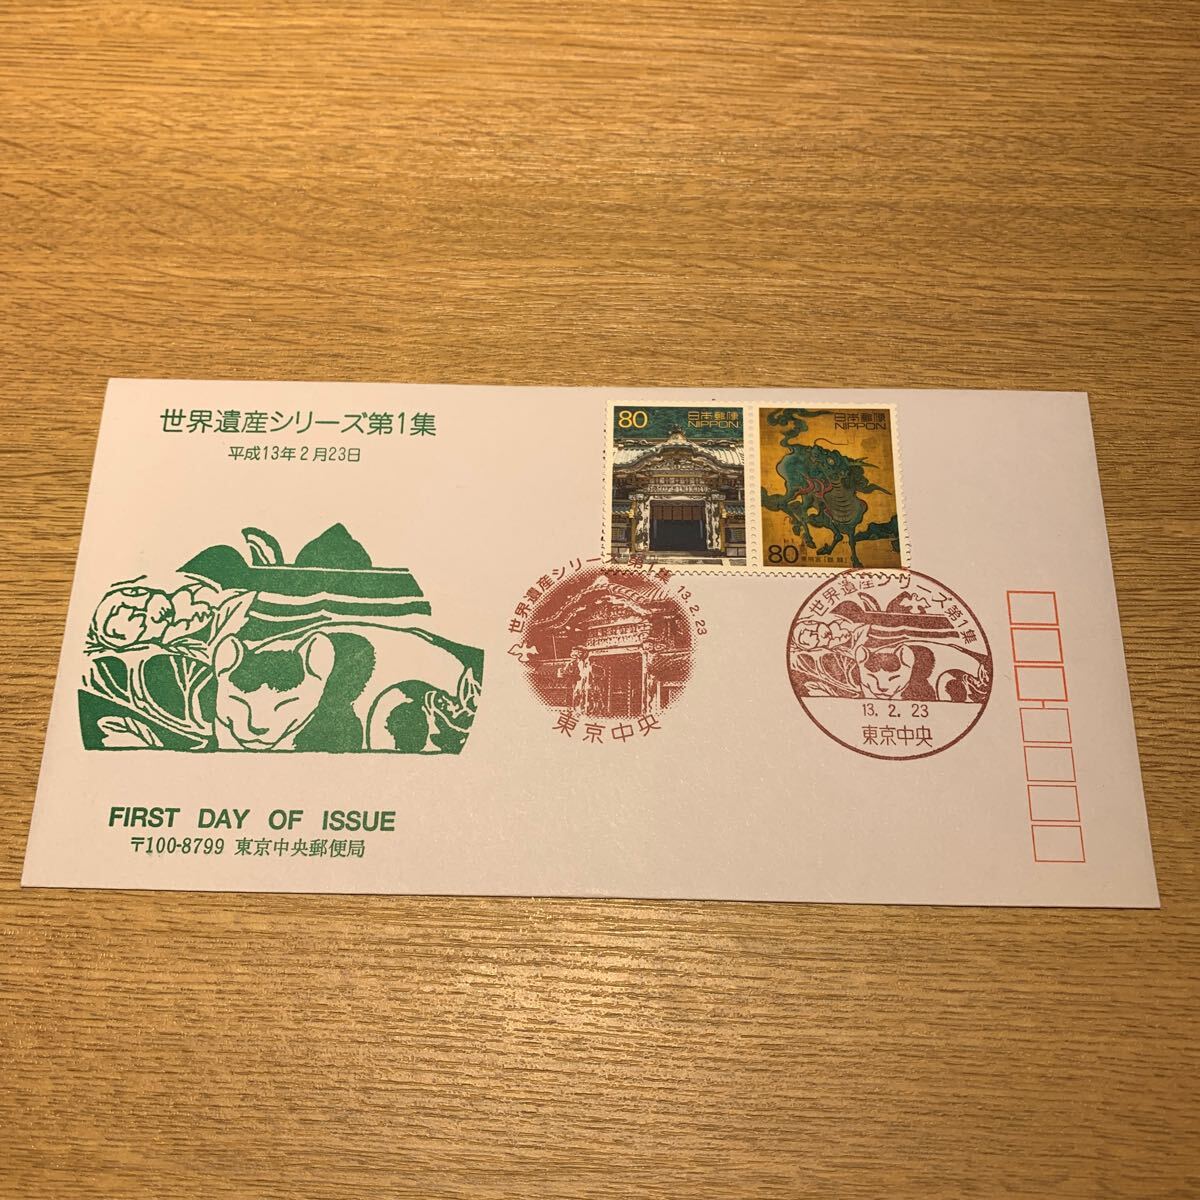 初日カバー 世界遺産シリーズ郵便切手 第1集 平成13年2月23日発行の画像1